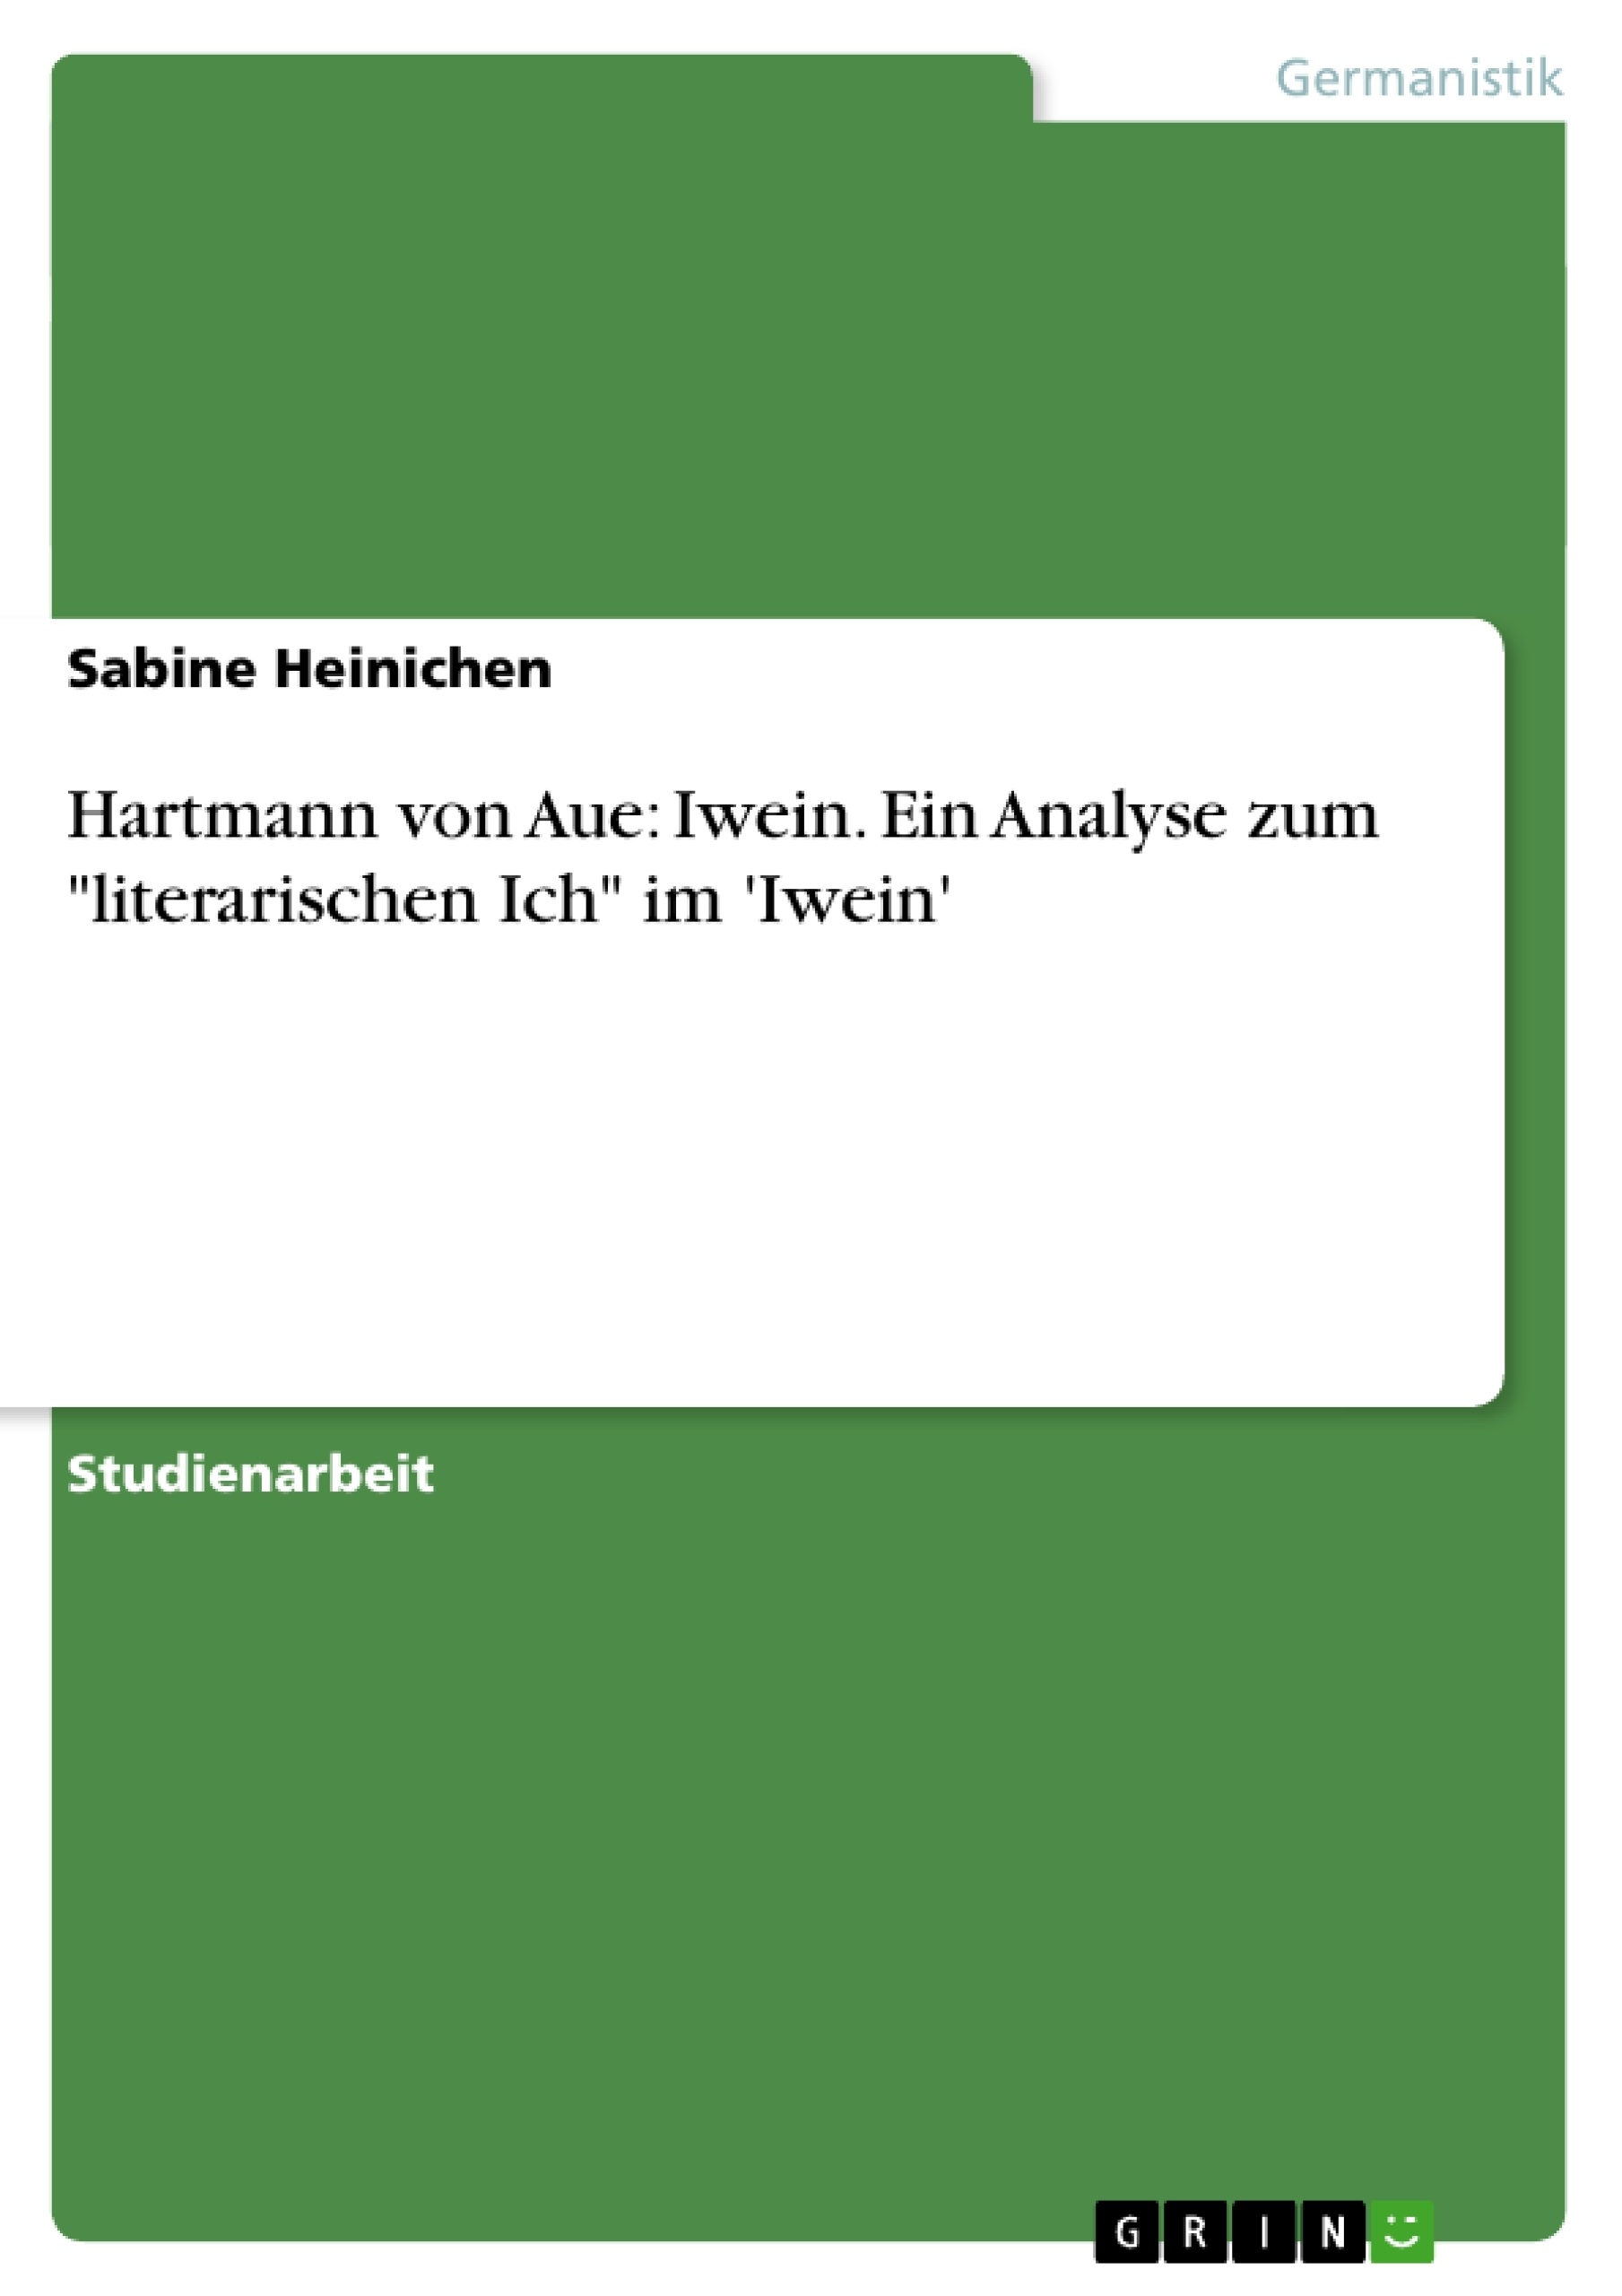 Título: Hartmann von Aue: Iwein. Ein Analyse zum "literarischen Ich" im 'Iwein'